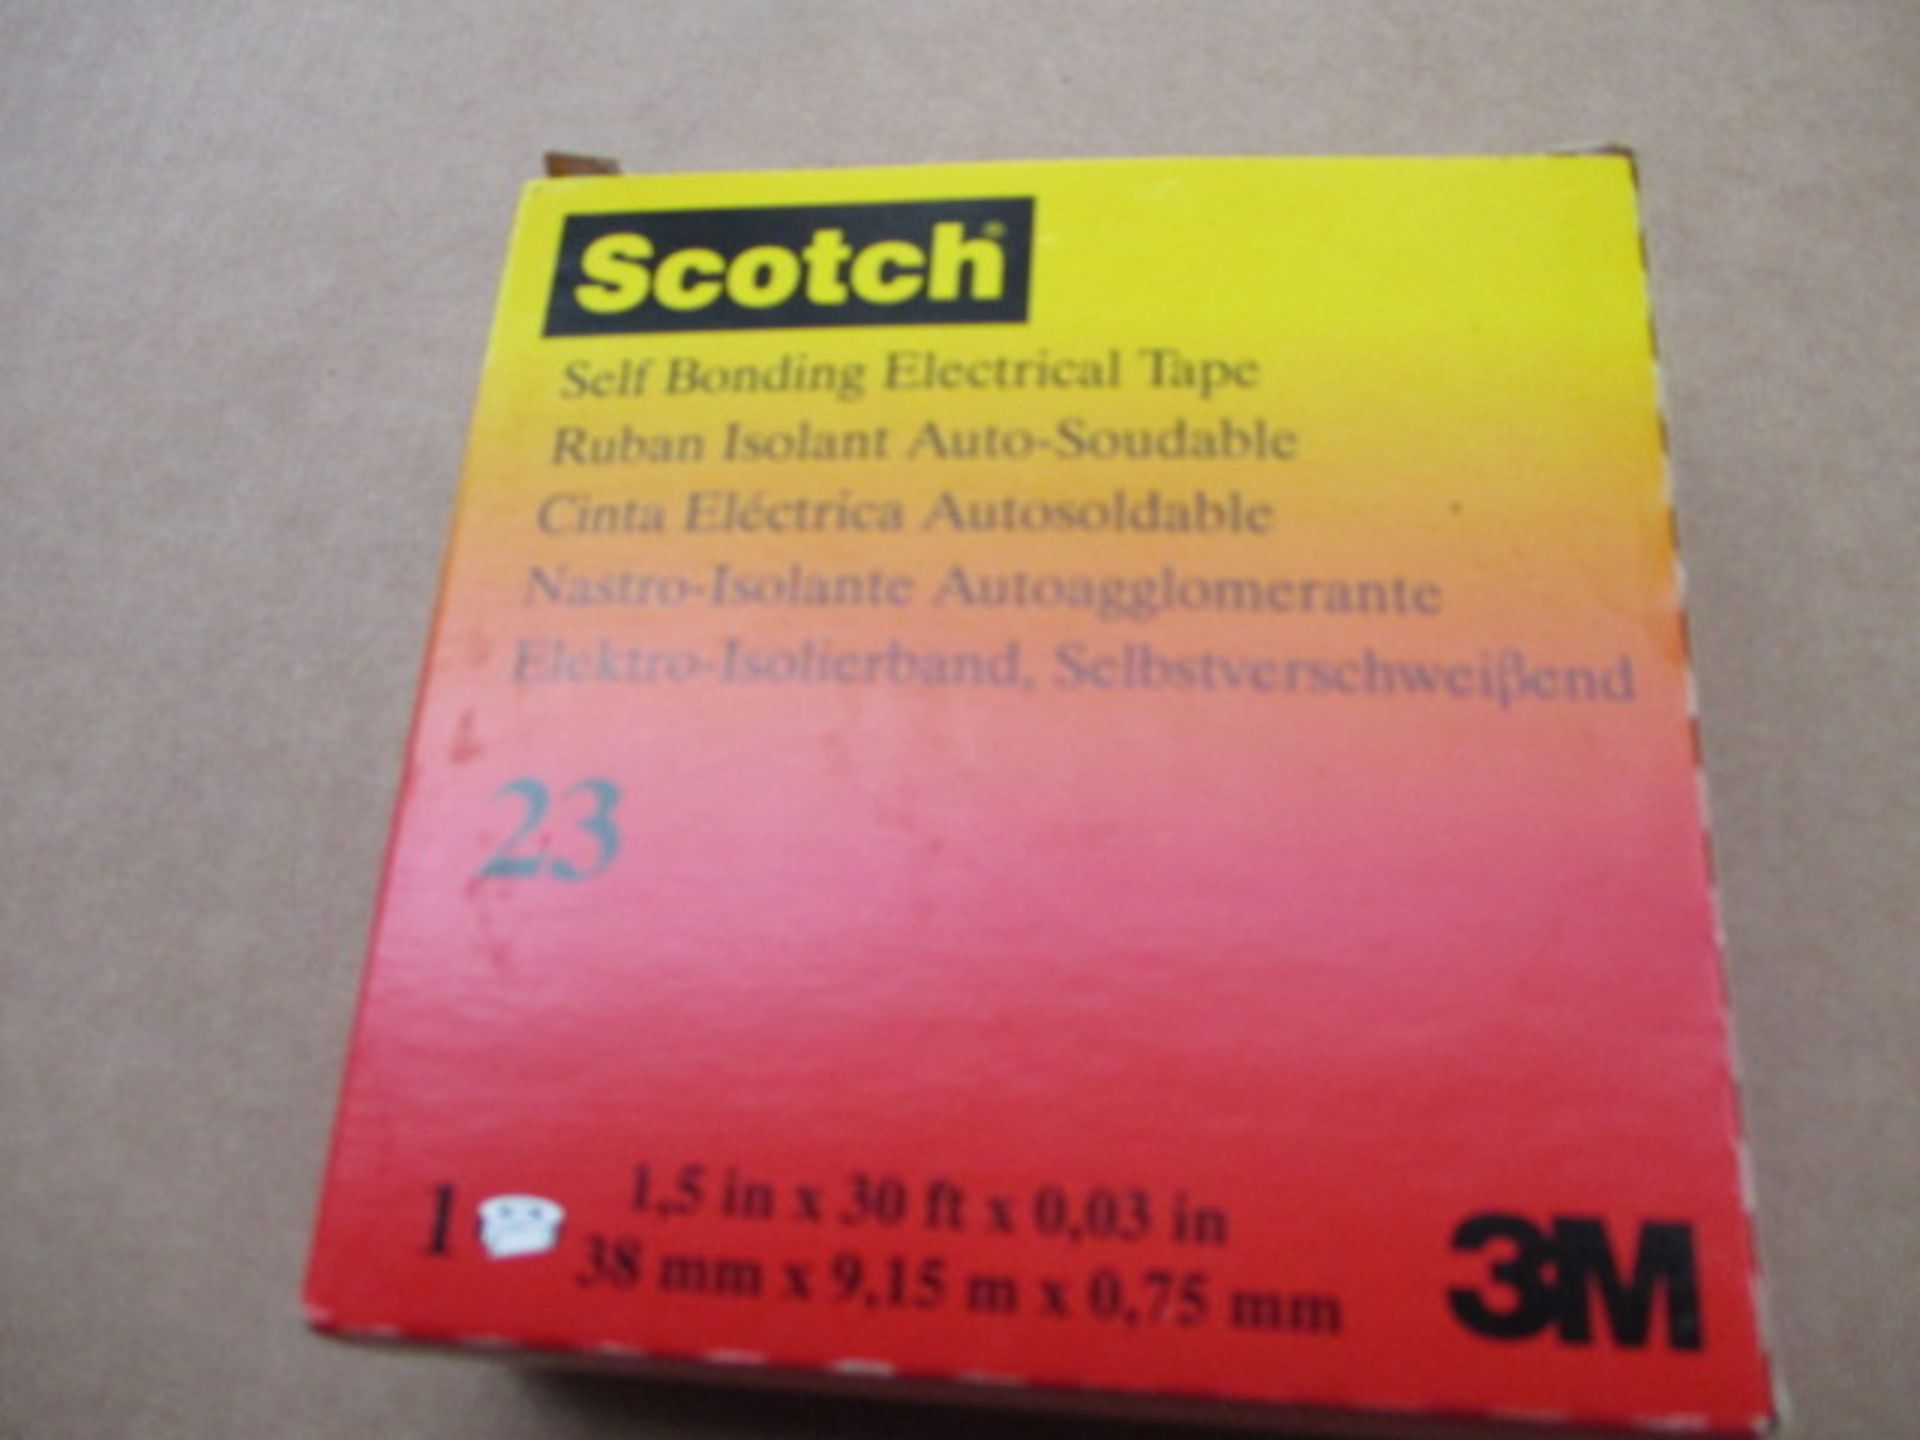 Scotch Electrical tape